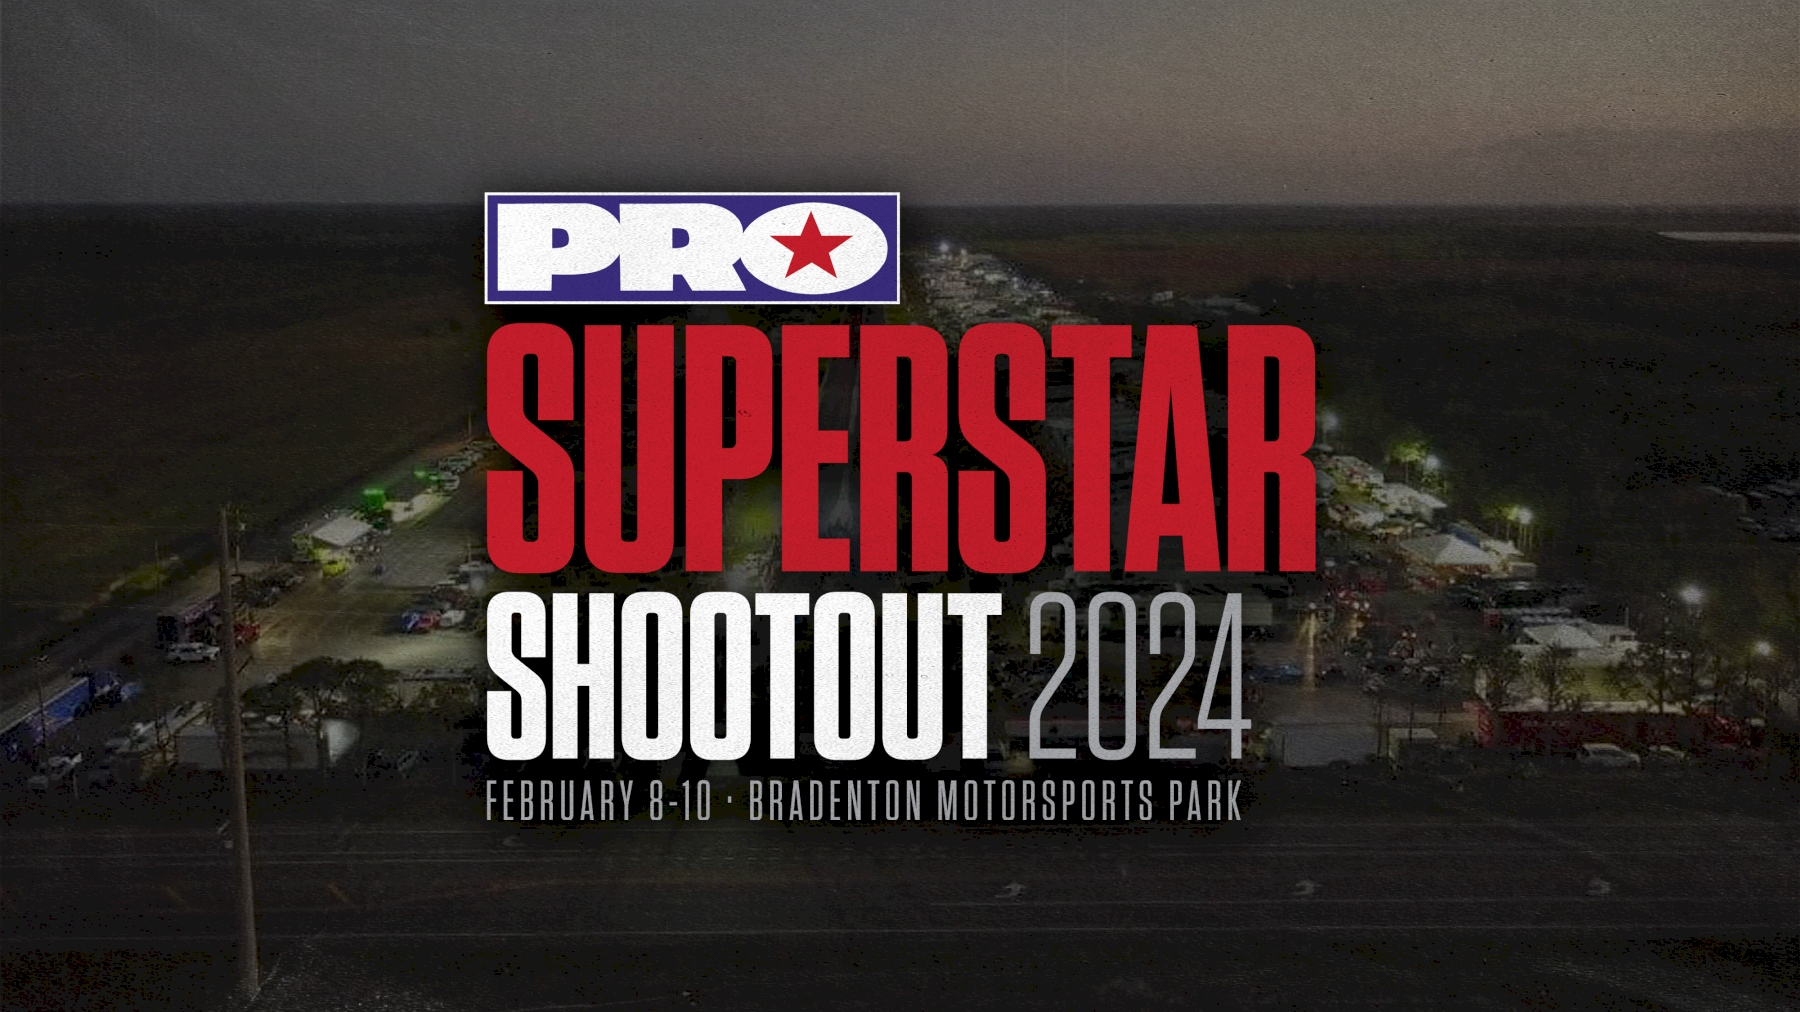 PRO Superstar Shootout Announcement Sizzle